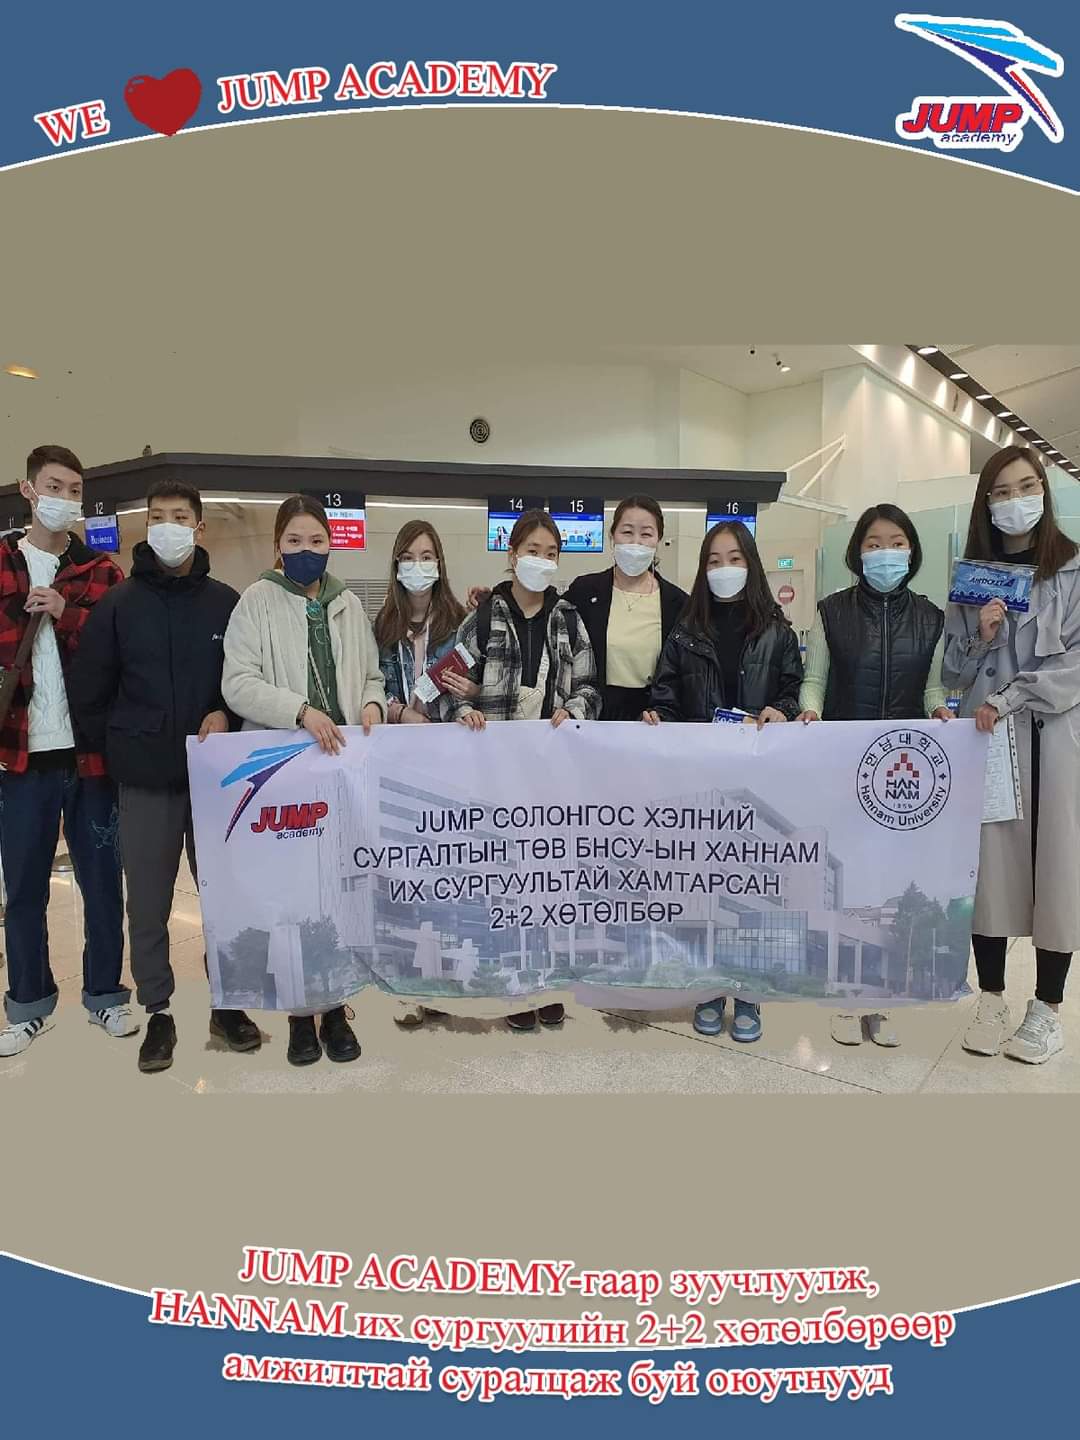 2+2 프로그램에 참여해 한국을 방문한 학생들